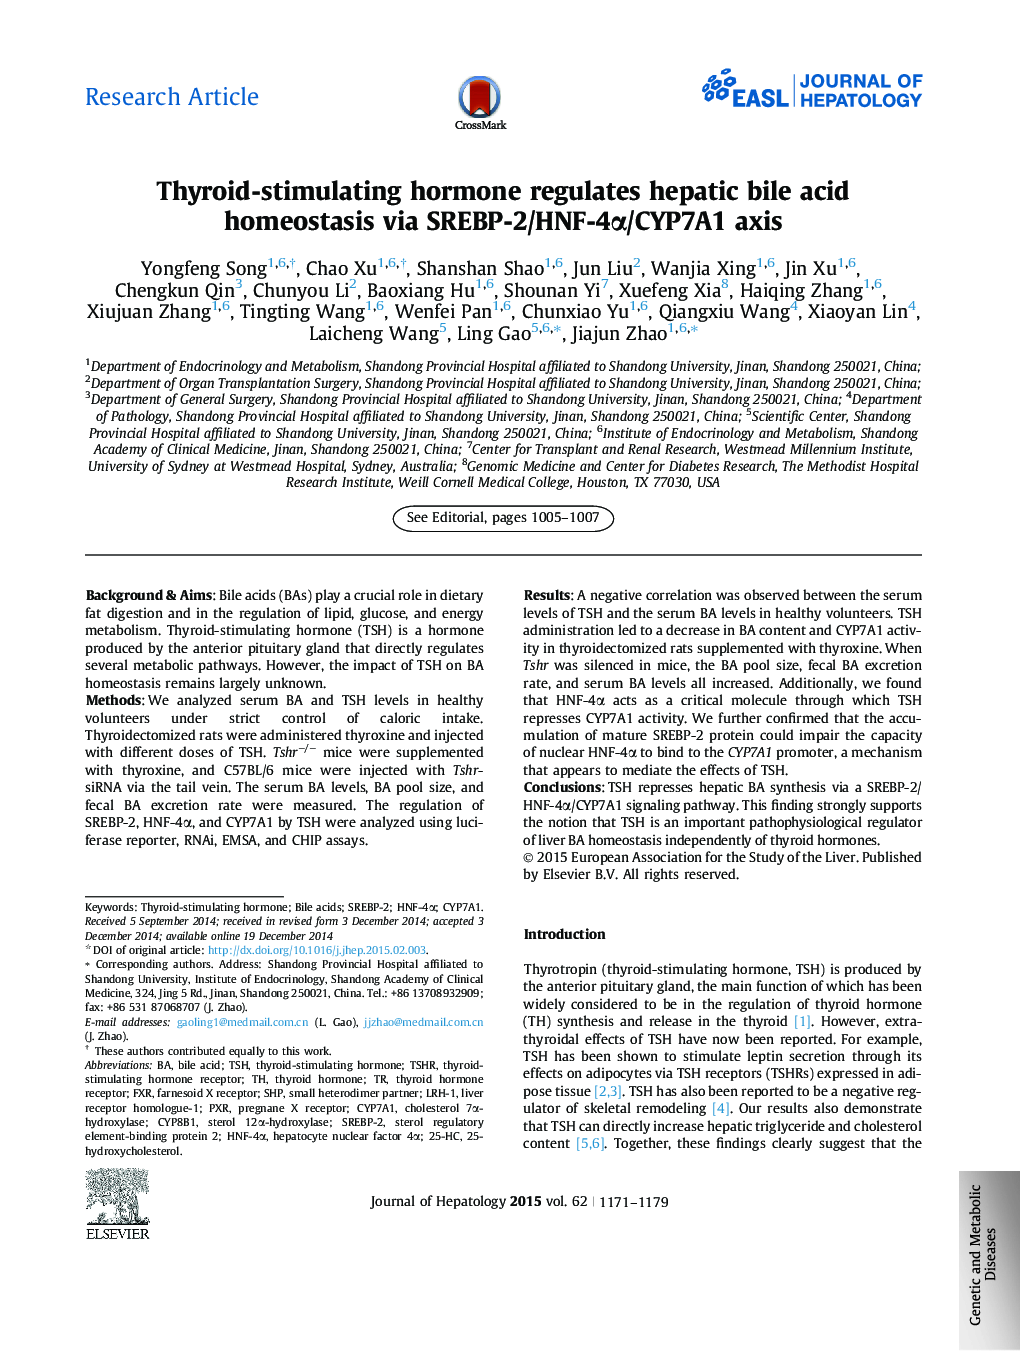 Research ArticleThyroid-stimulating hormone regulates hepatic bile acid homeostasis via SREBP-2/HNF-4Î±/CYP7A1 axis